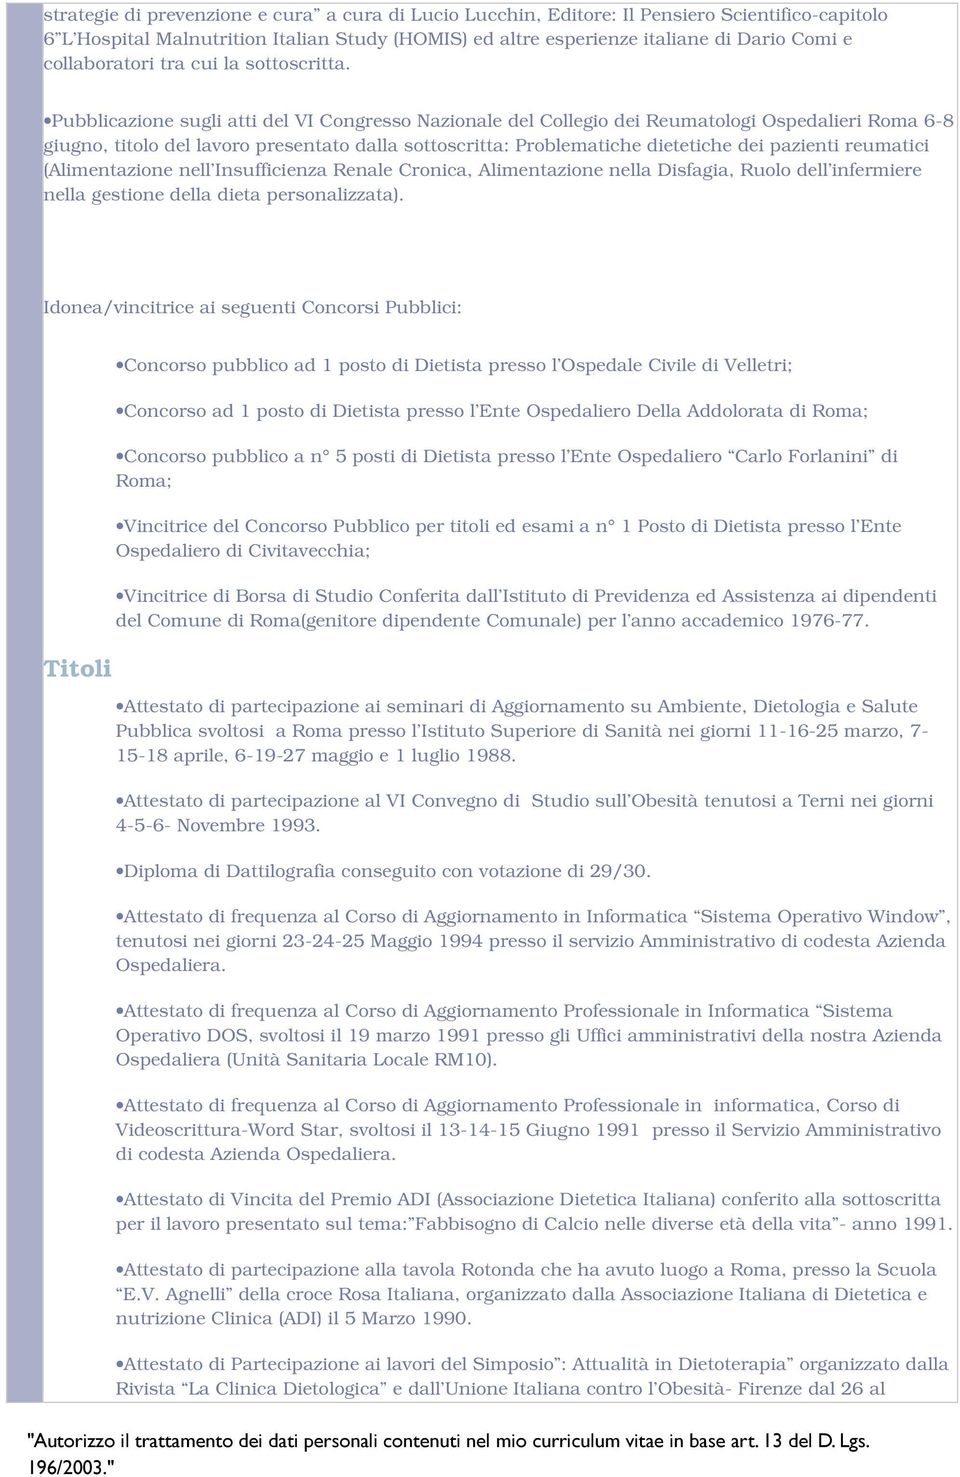 Pubblicazione sugli atti del VI Congresso Nazionale del Collegio dei Reumatologi Ospedalieri Roma 6-8 giugno, titolo del lavoro presentato dalla sottoscritta: Problematiche dietetiche dei pazienti